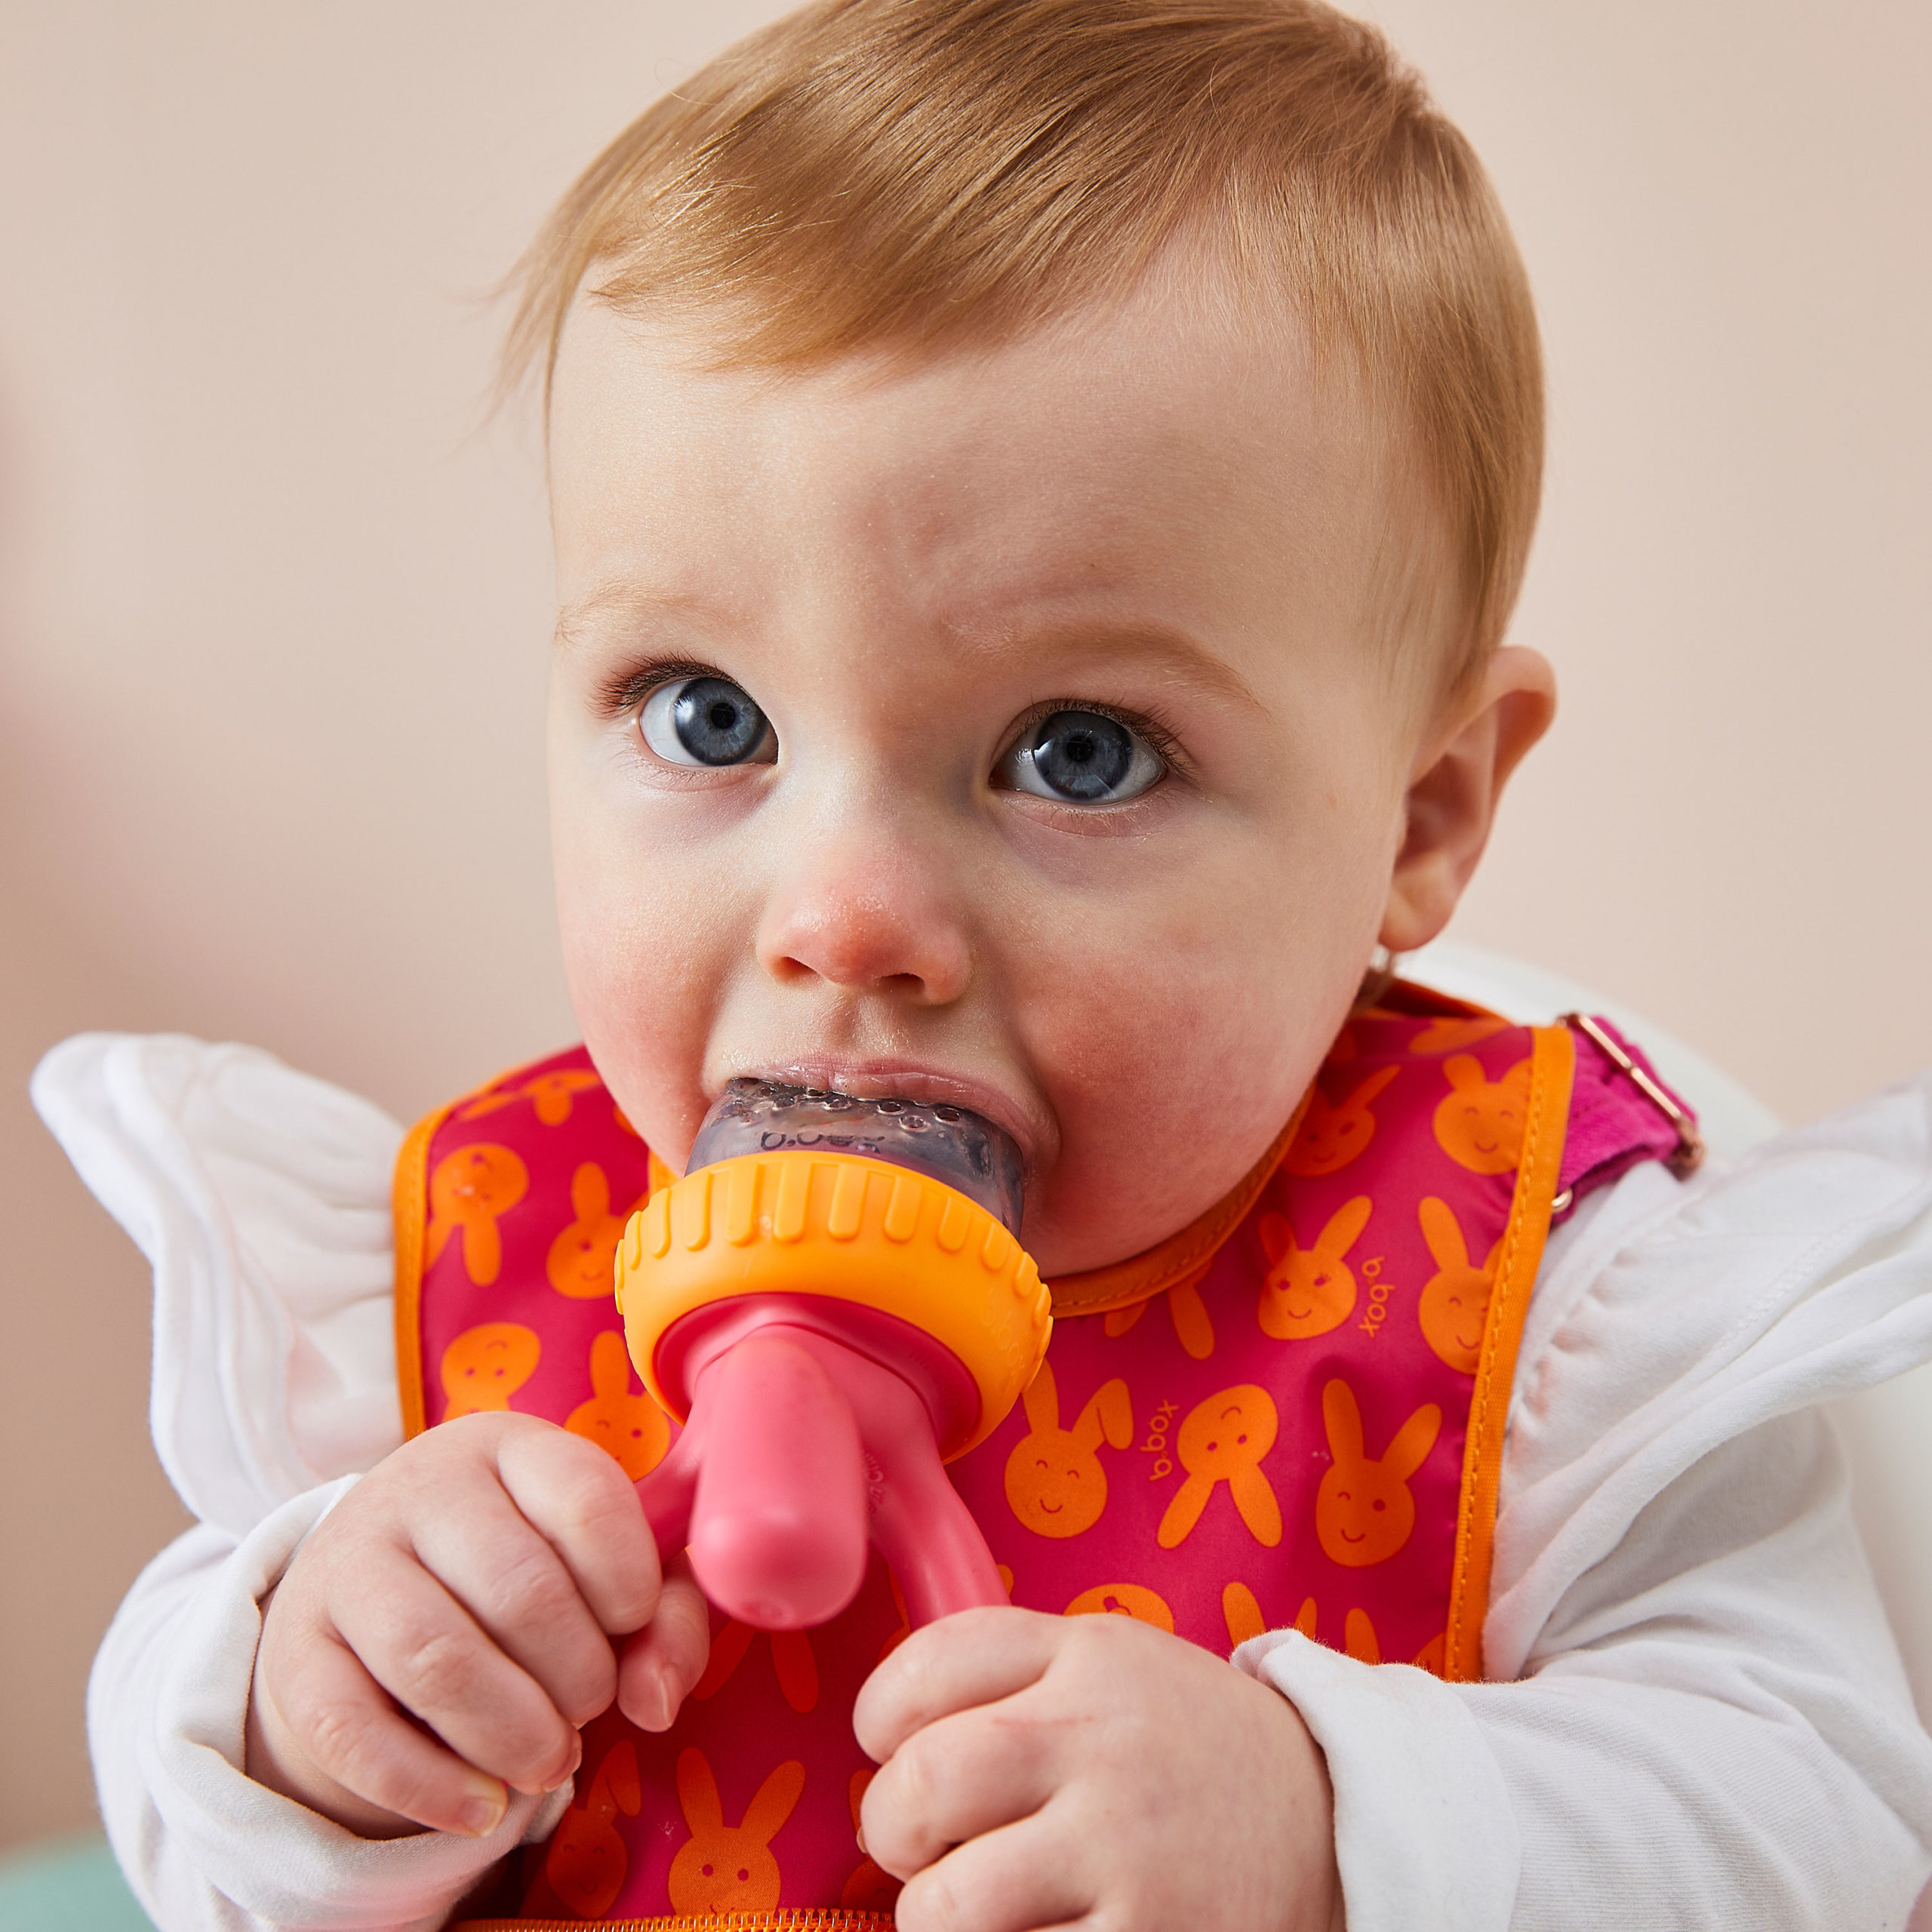 Grignoteuse en Silicone pour bébé - Découverte des aliments